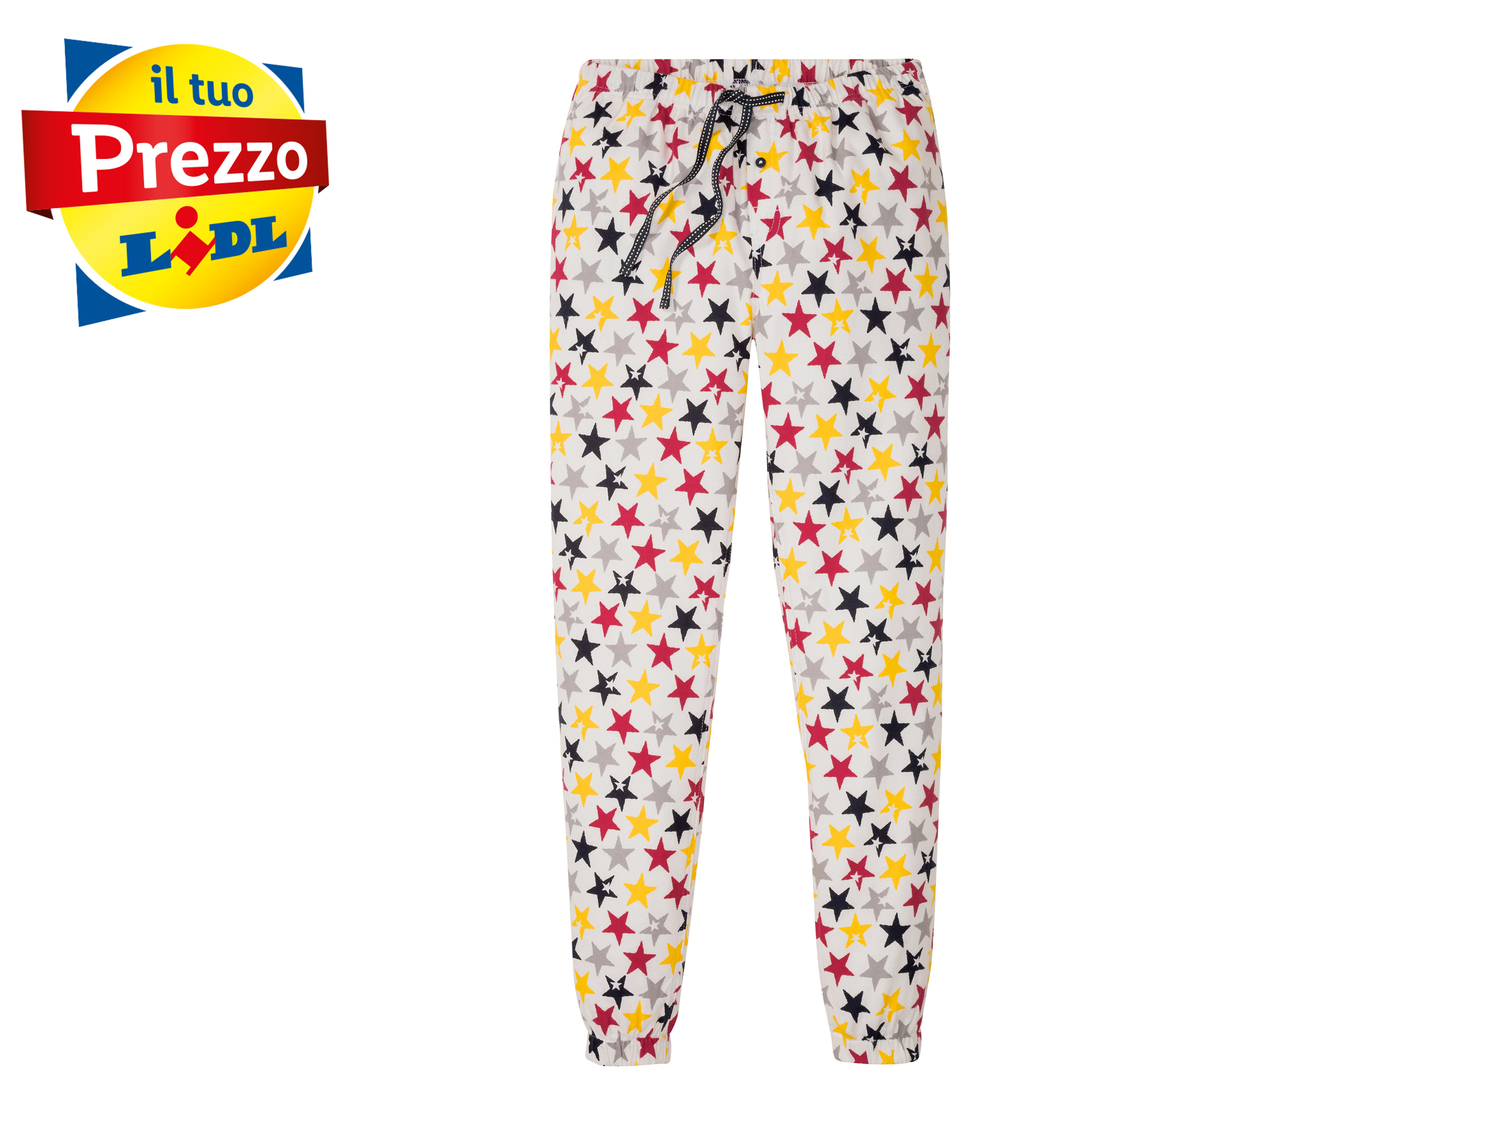 Pantaloni pigiama da donna Esmara, prezzo 4.99 &#8364; 
Misure: S-L 
- Puro ...